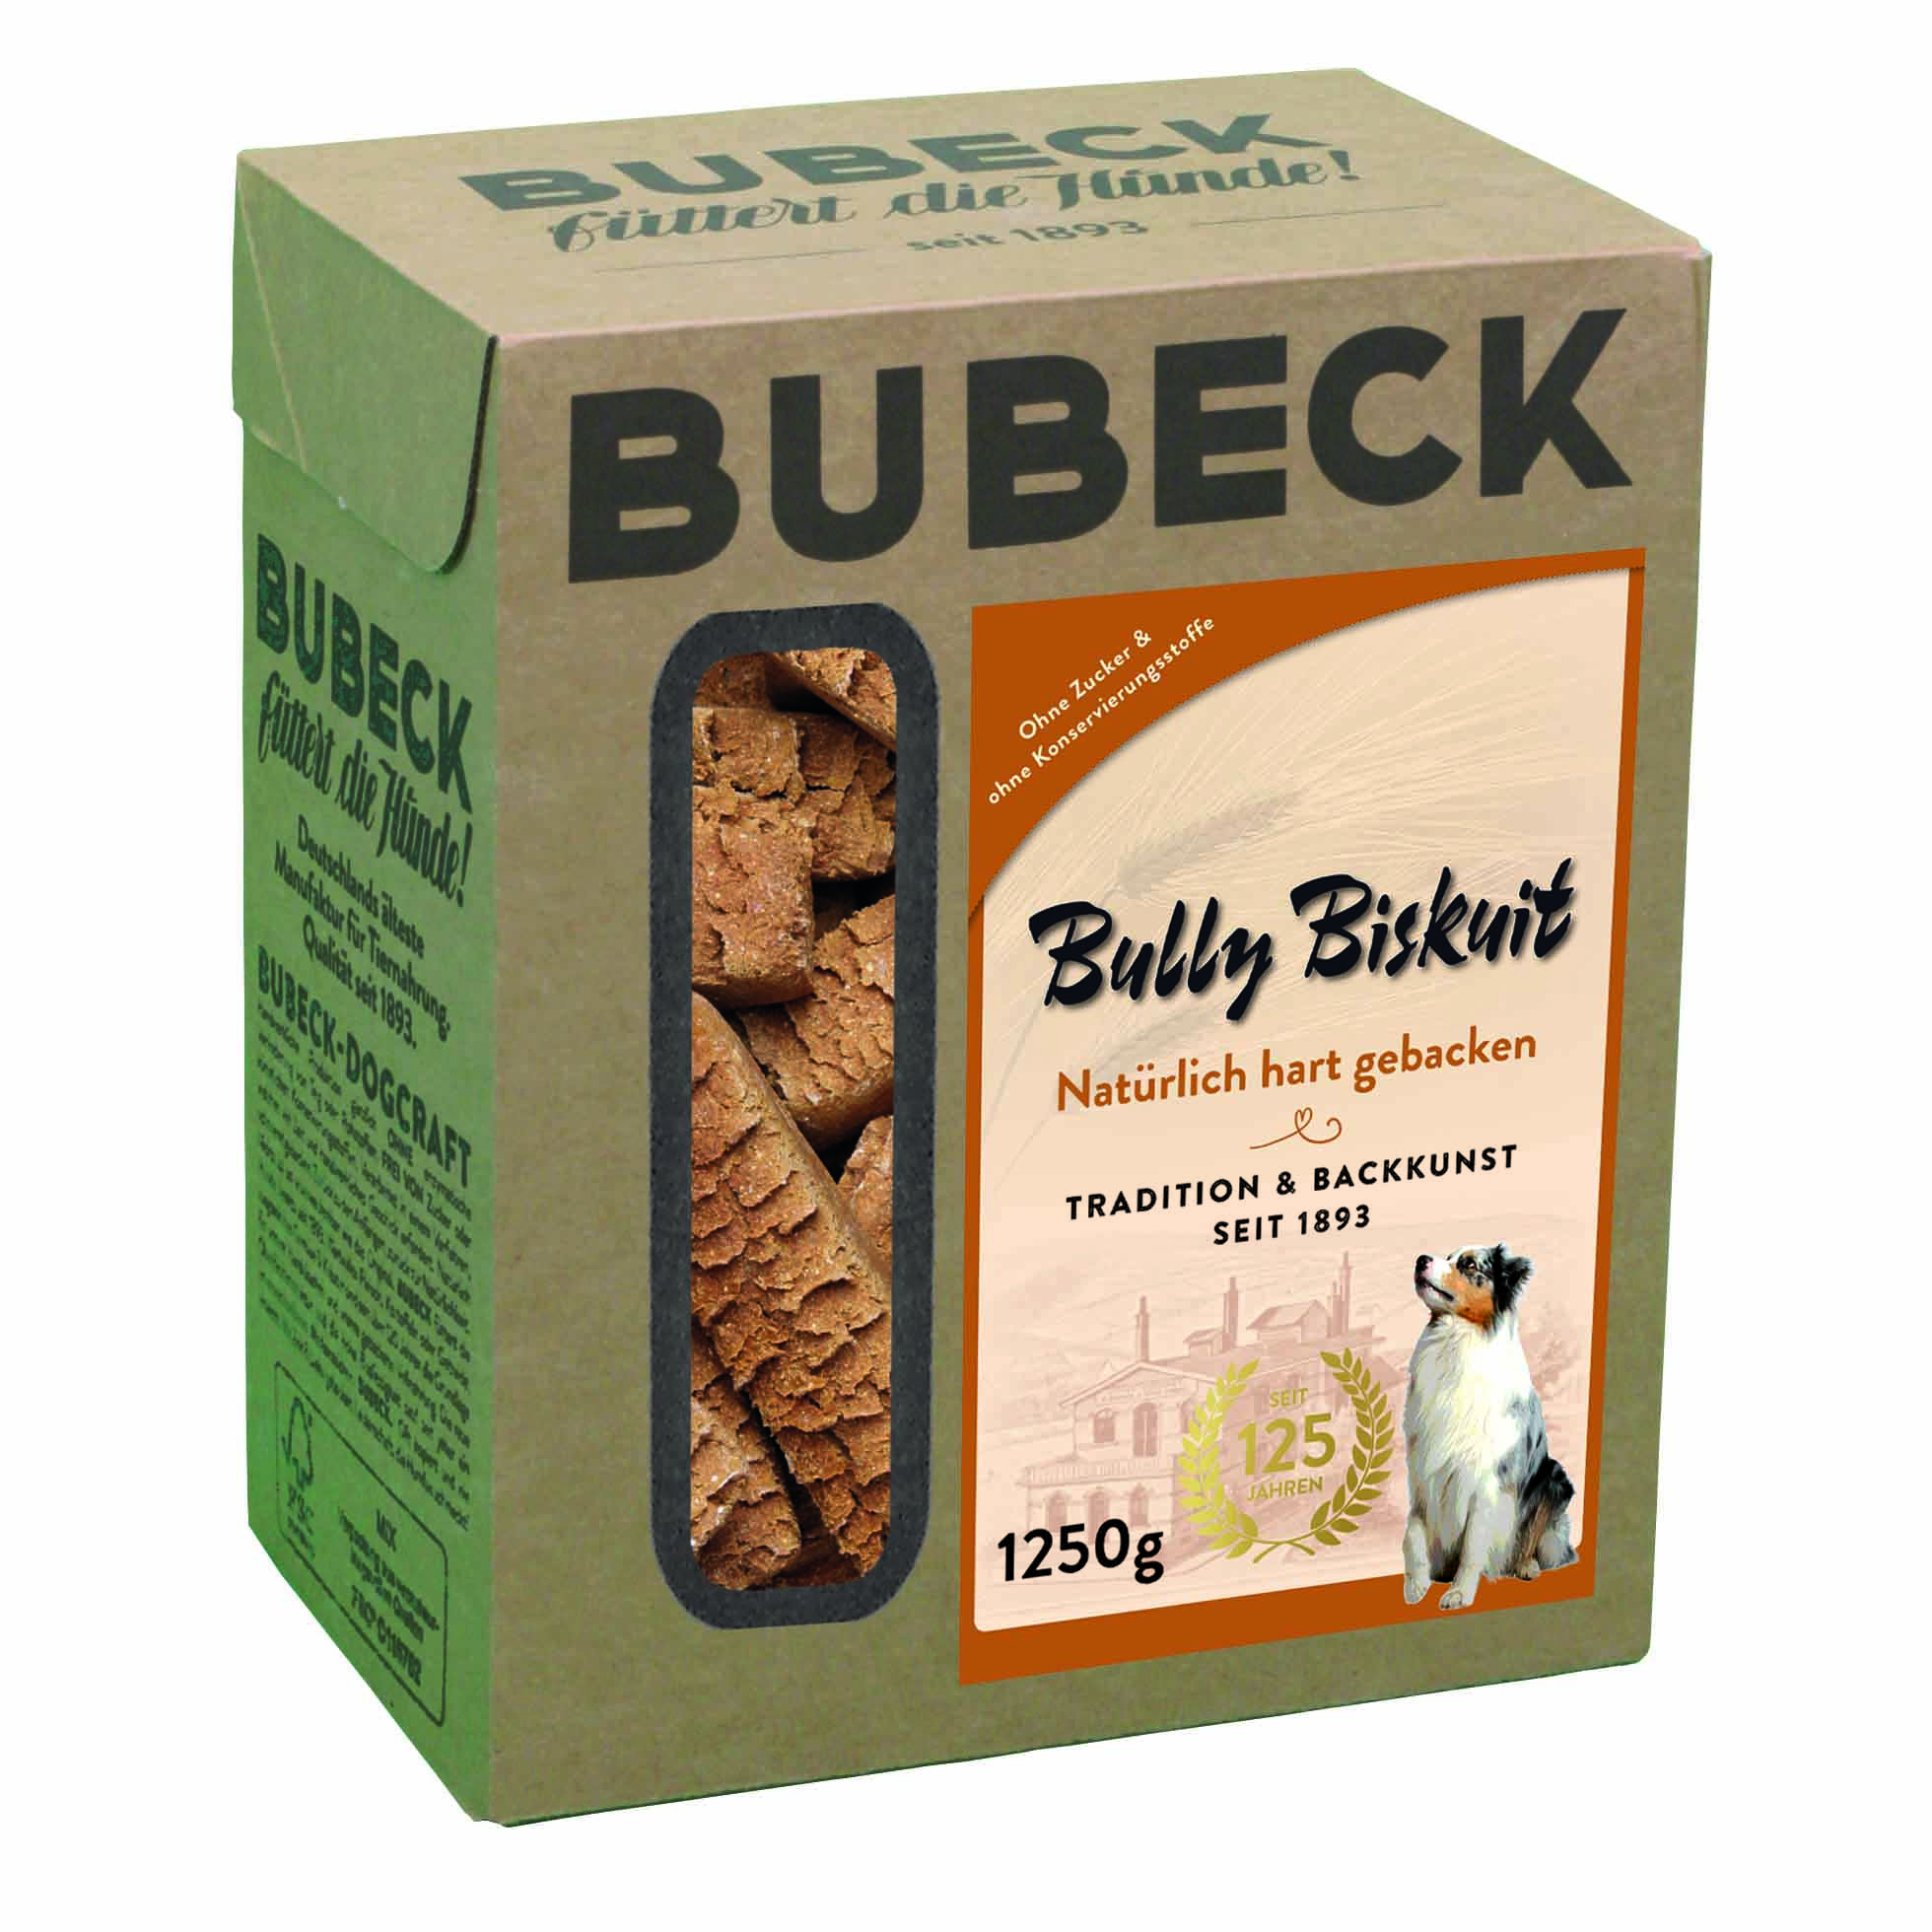 Bubeck, Bully Biskuit, 1250g